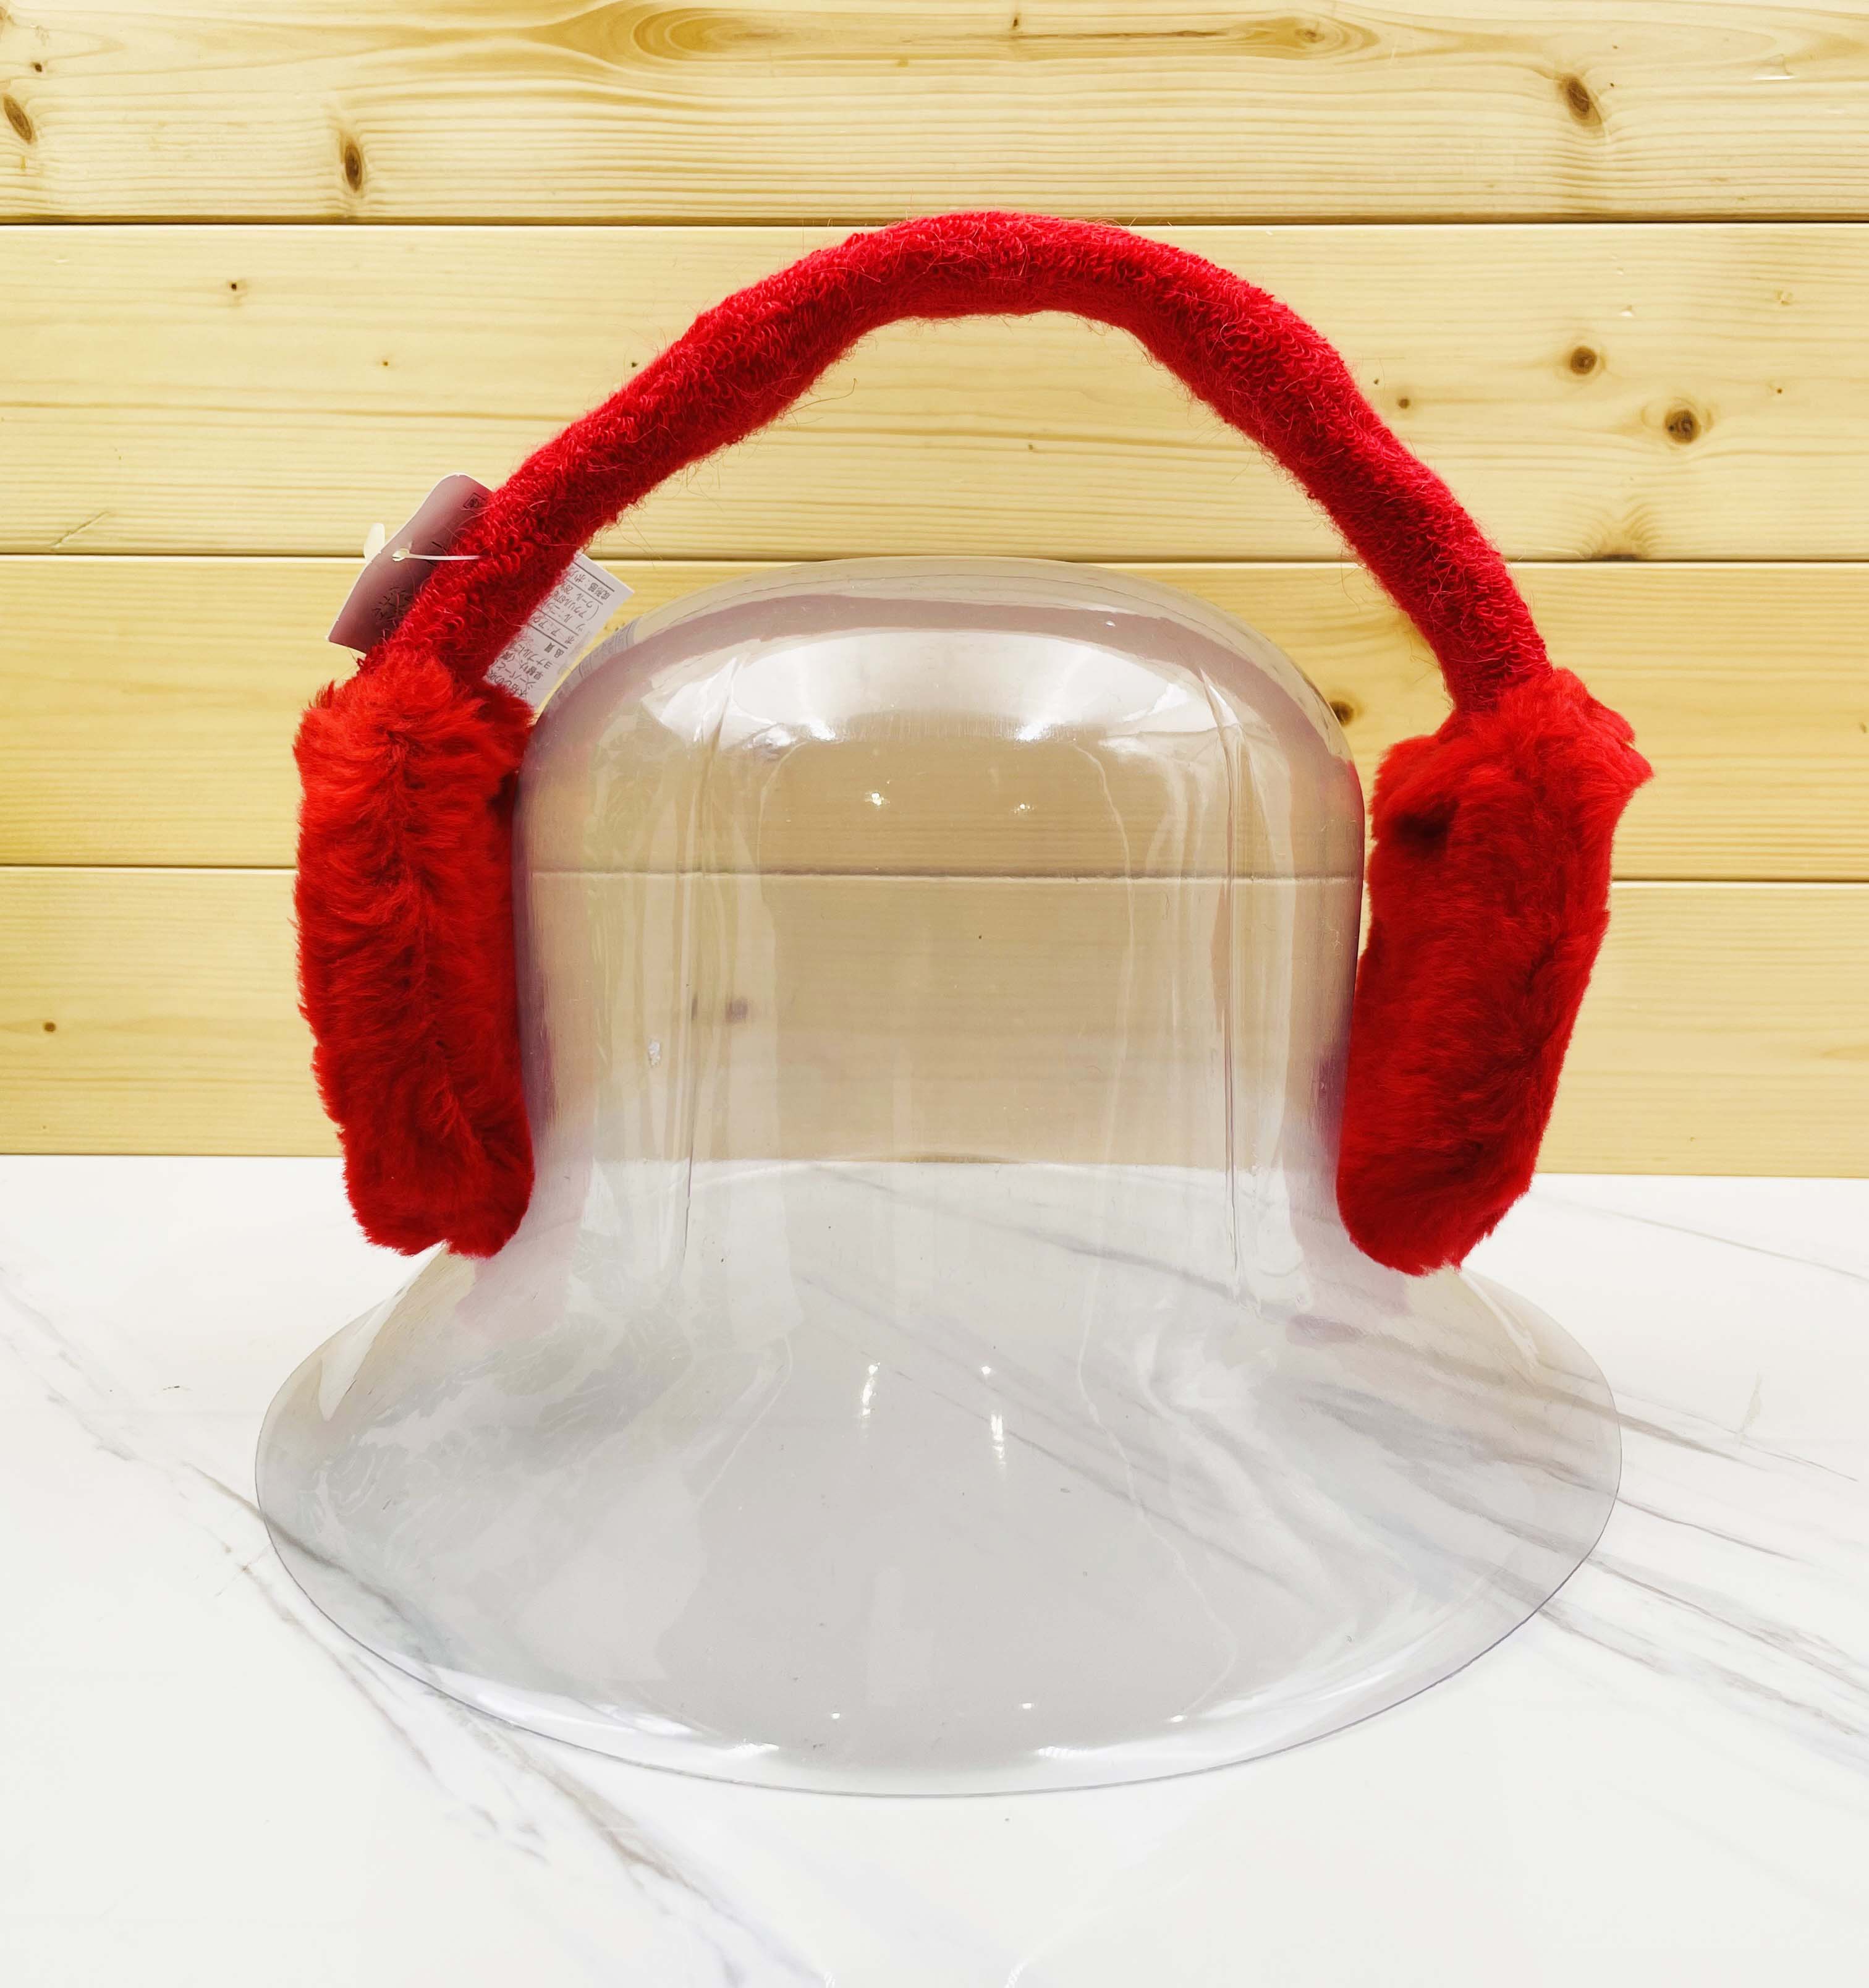 【震撼精品百貨】日本精品百貨~日本禦寒素面可折疊式耳罩-紅*45871